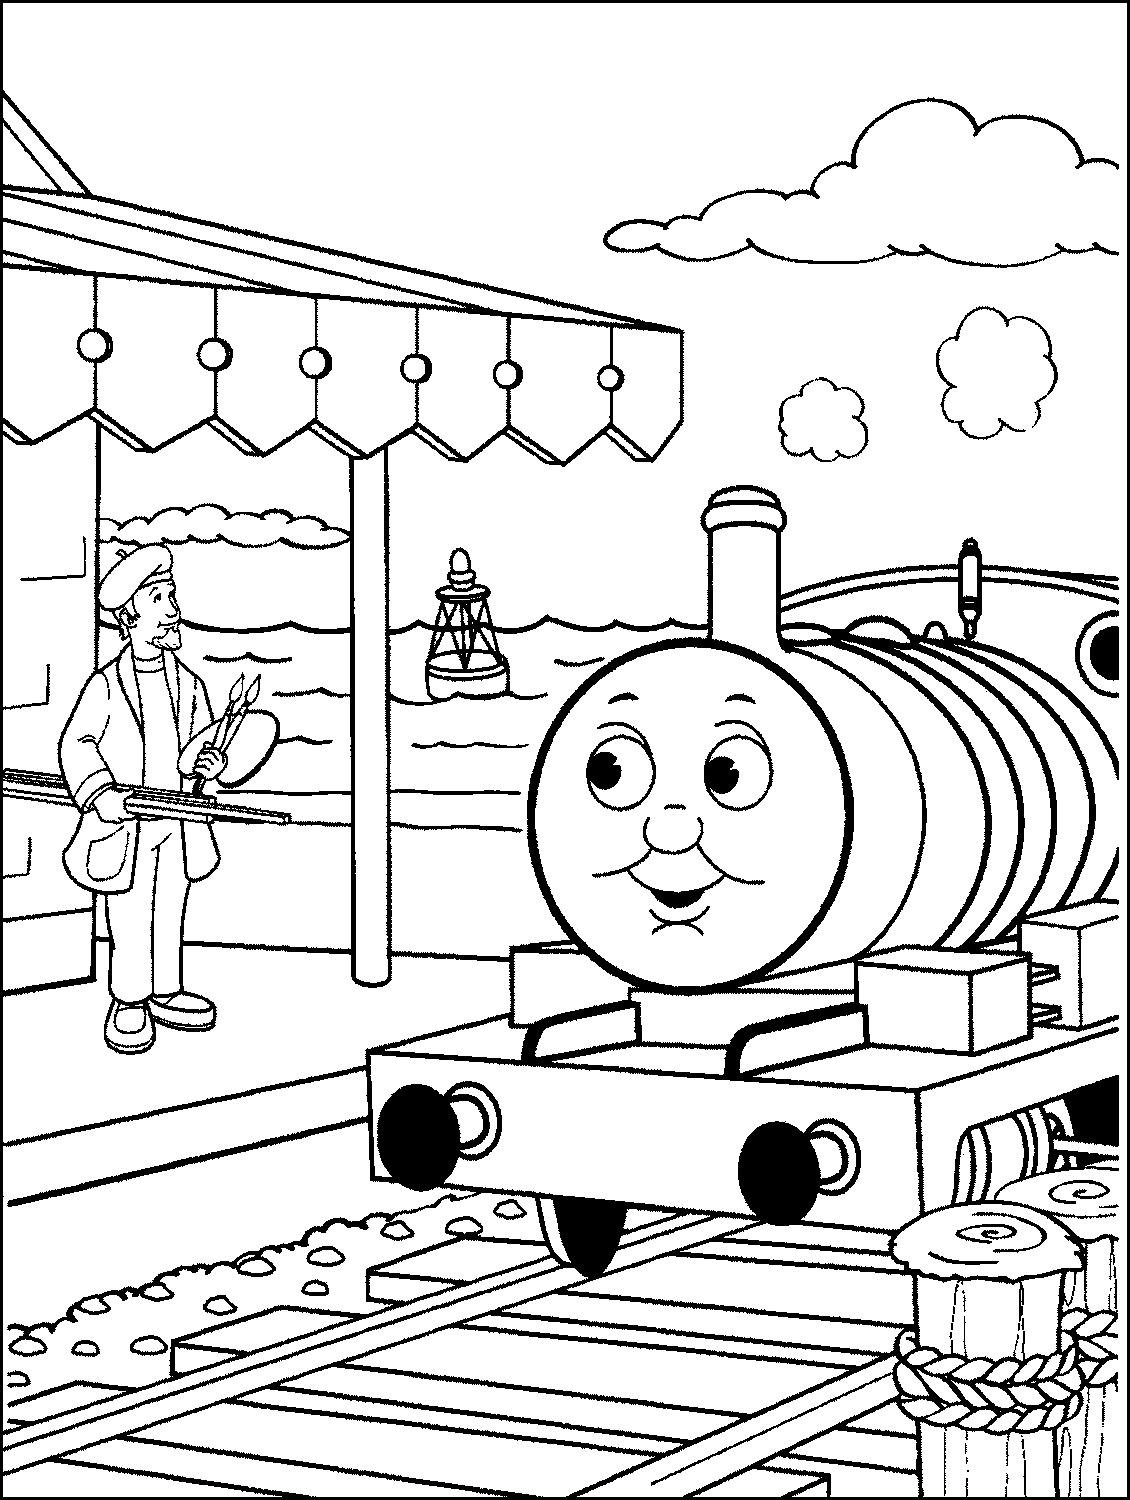  Gambar  Mewarnai Kereta  Api  Thomas murid 17